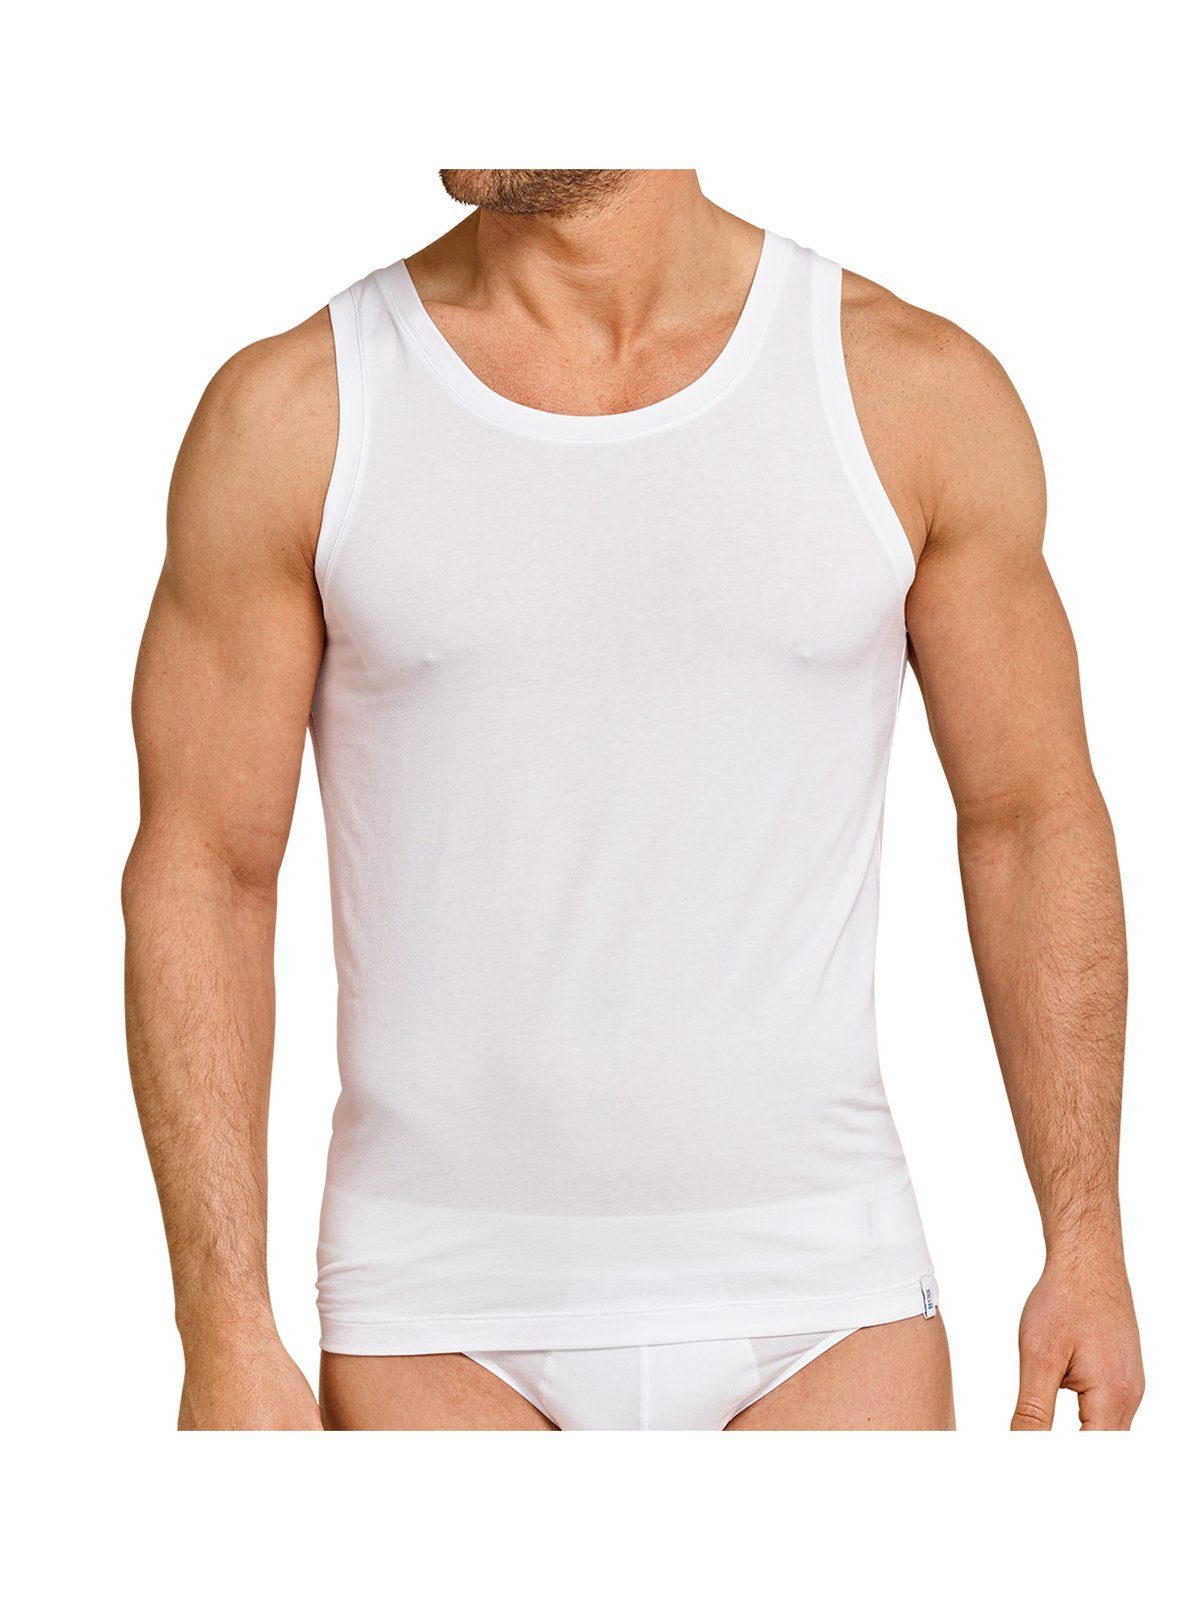 Schiesser Herren Unterhemden » Unterziehshirts online kaufen | OTTO